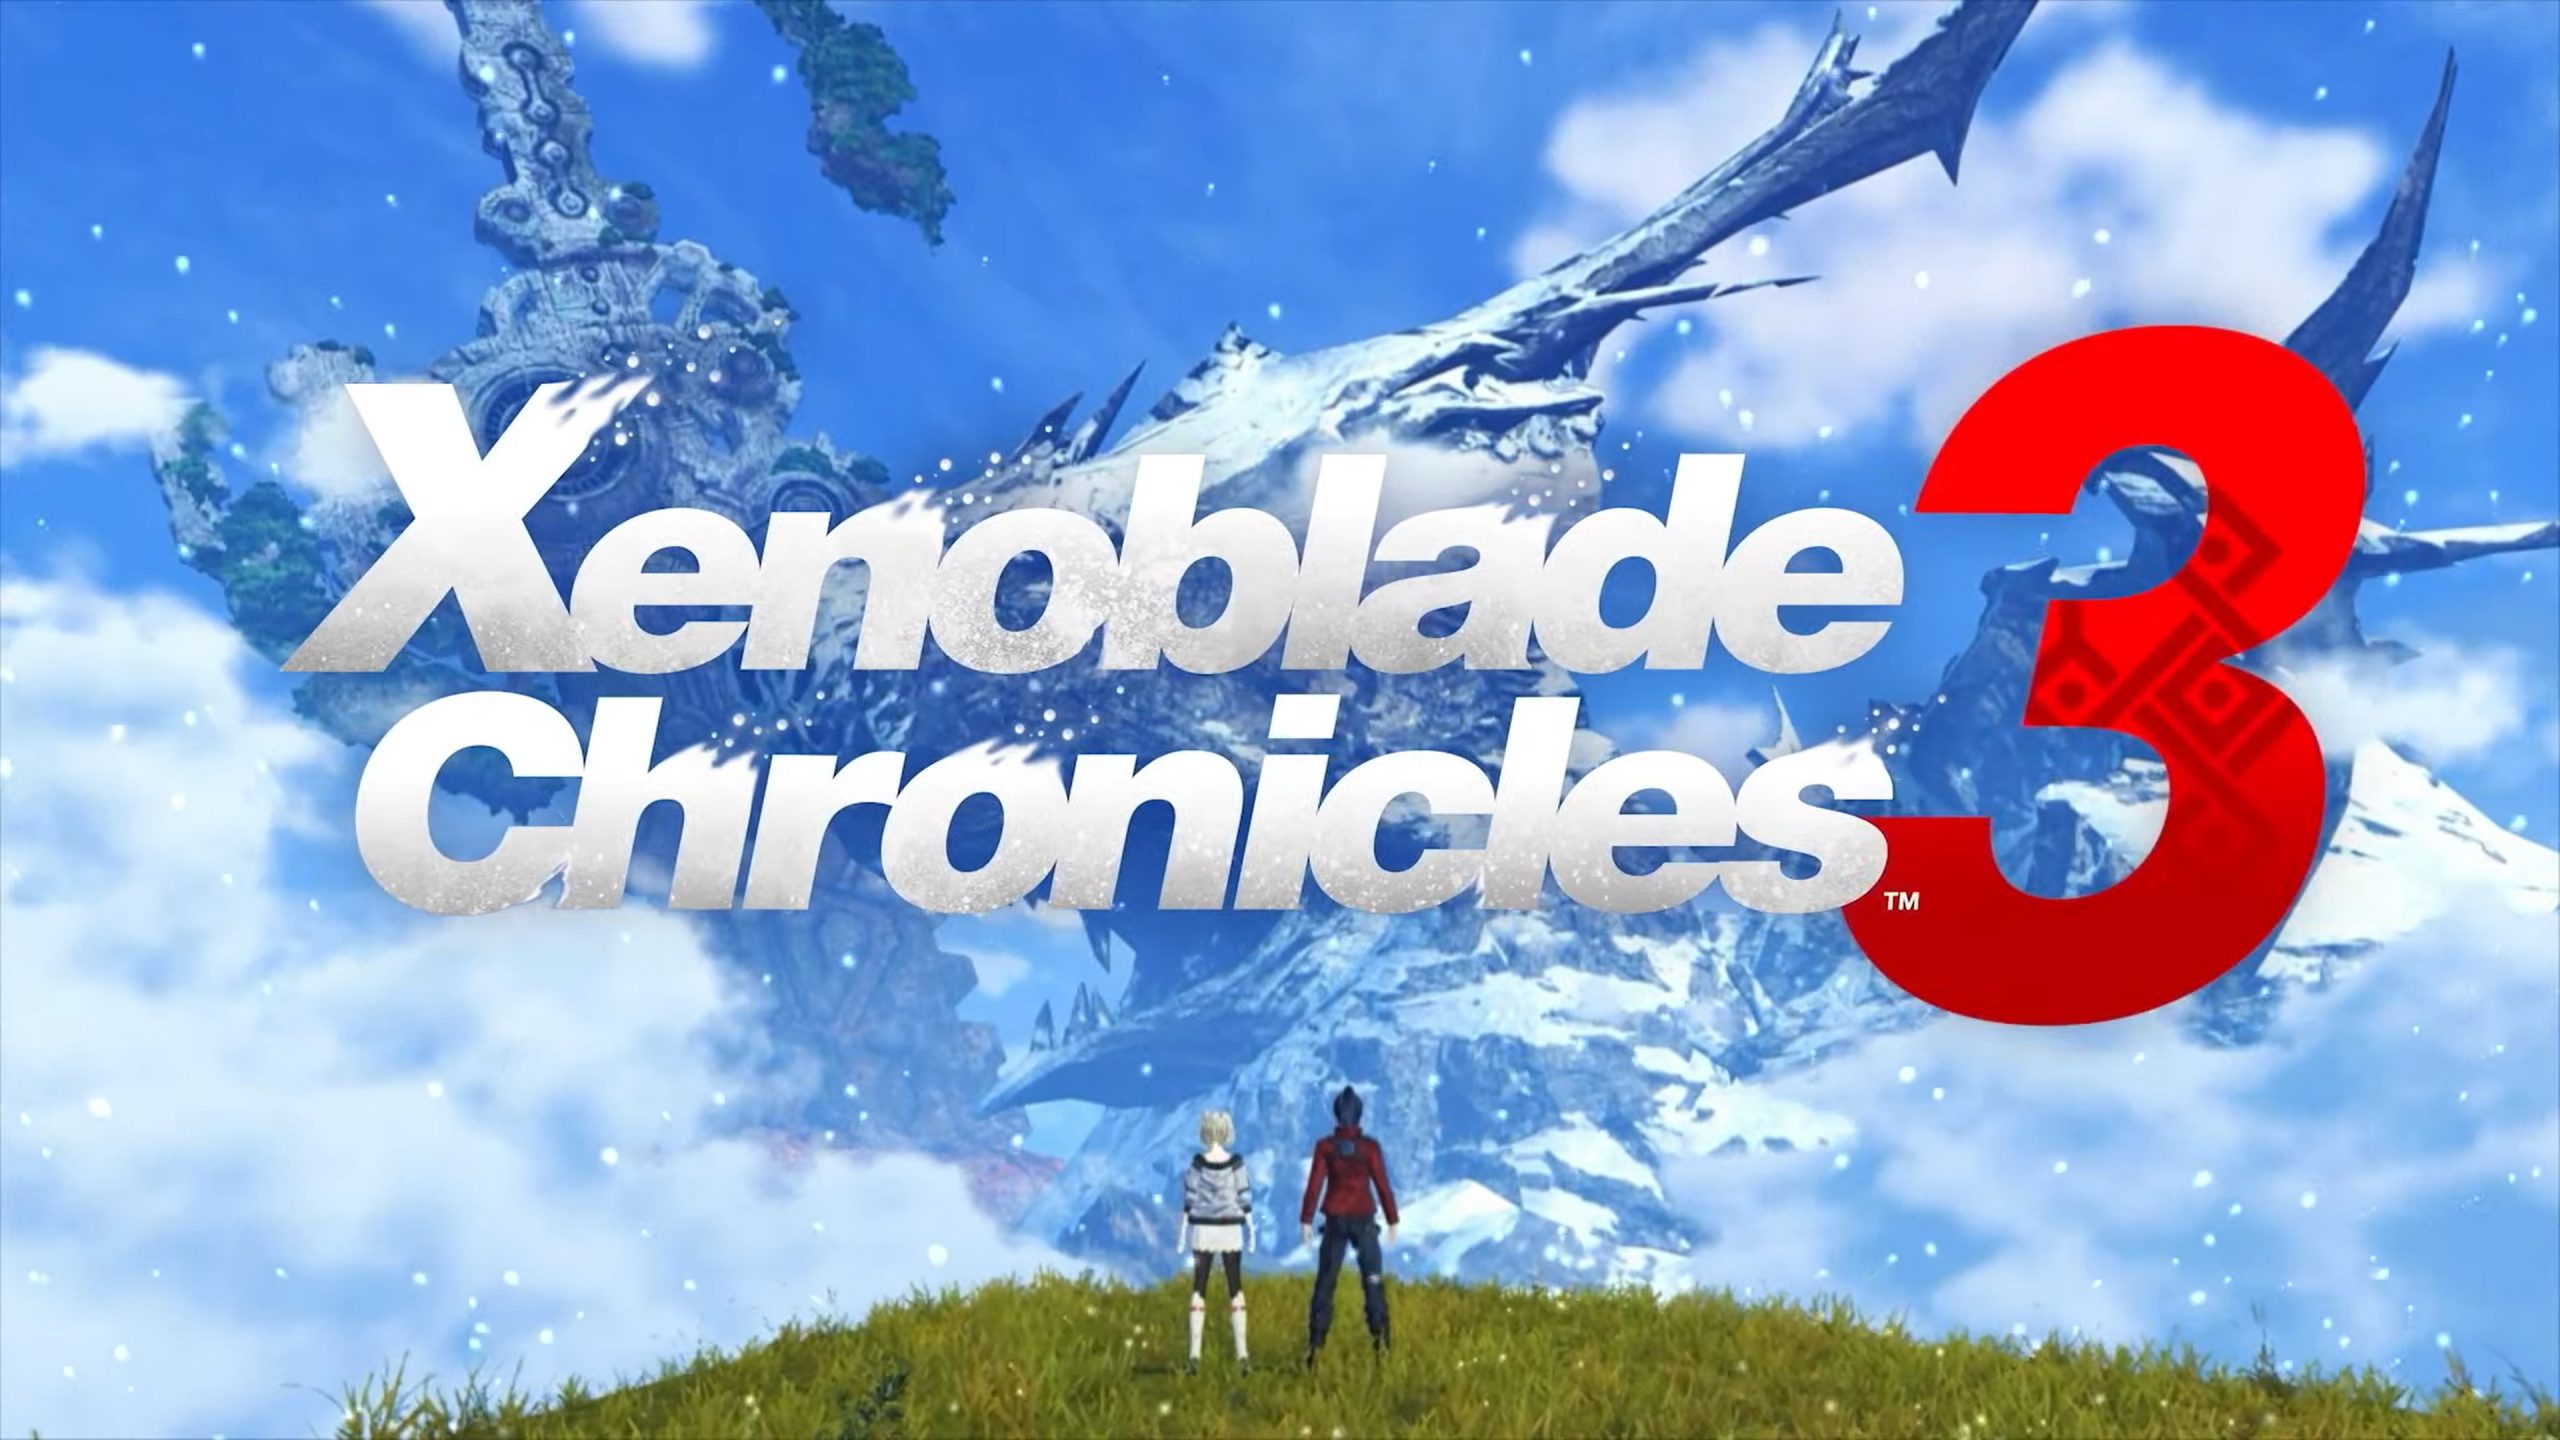  เปิดตัว Xenoblade Chronicles 3 อย่างเป็นทางการ พร้อมกำหนดจำหน่ายบน Nintendo Switch ในเดือนกันยายนนี้